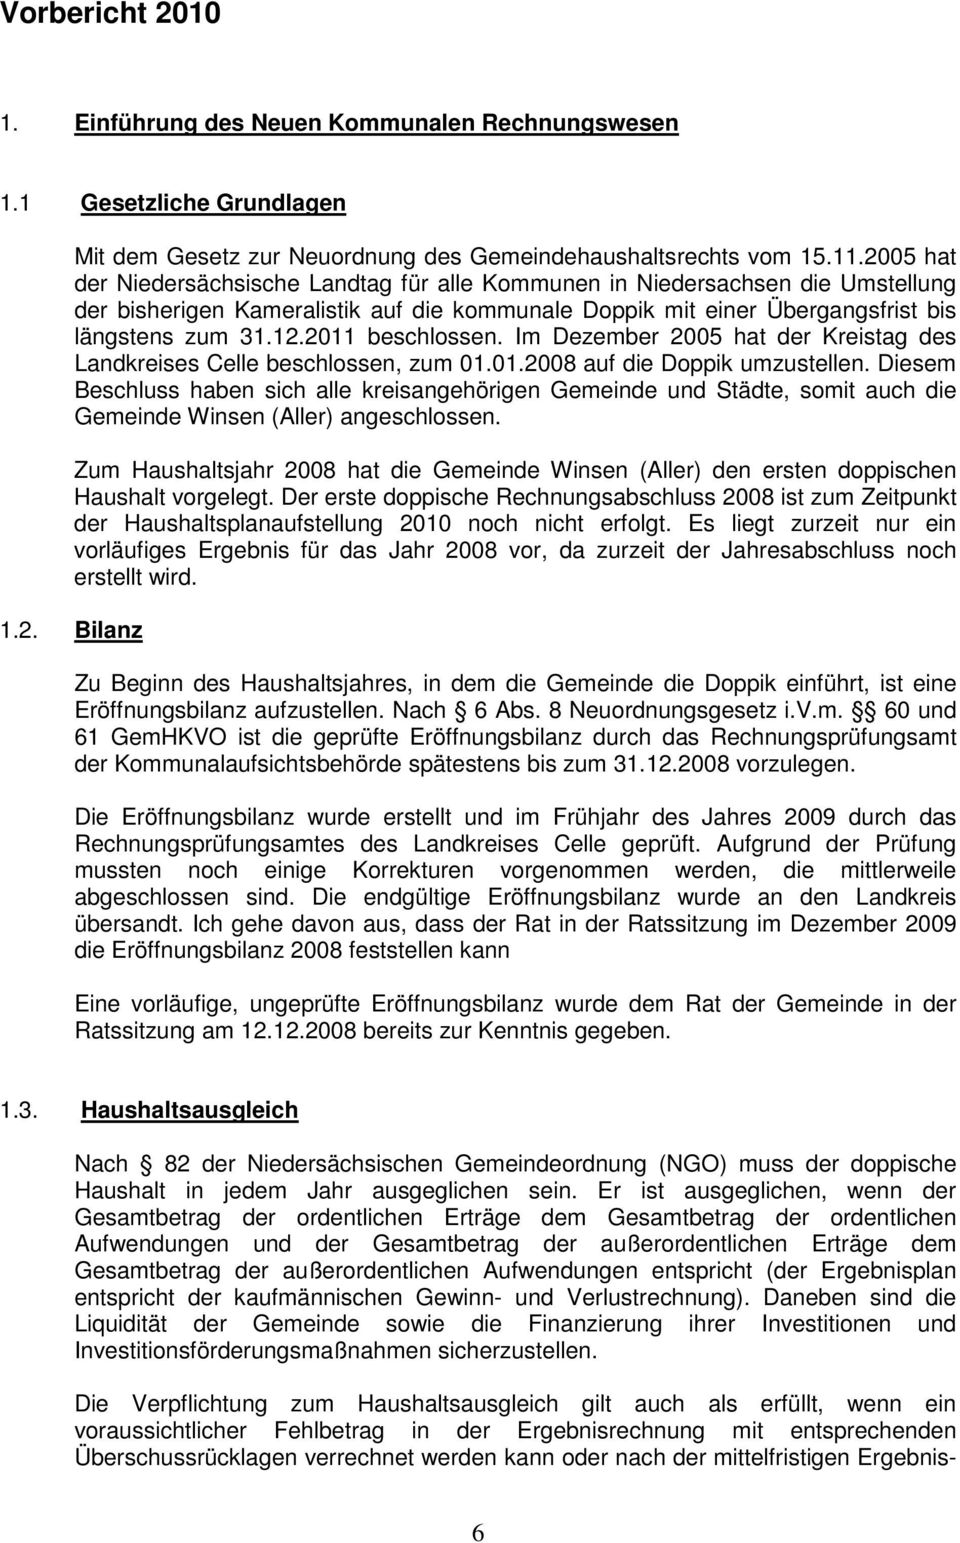 2011 beschlossen. Im Dezember 2005 hat der Kreistag des Landkreises Celle beschlossen, zum 01.01.2008 auf die Doppik umzustellen.